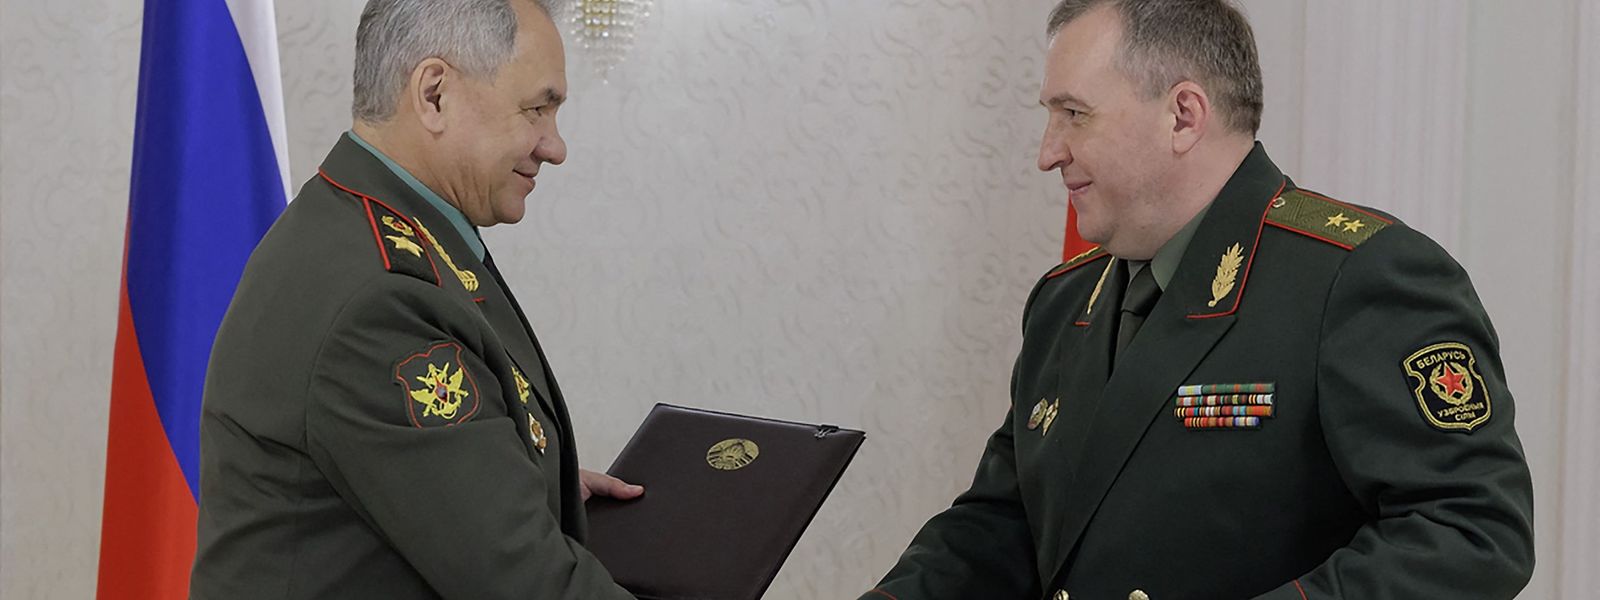 Die Verteidigungsminister beider Länder haben ein Dokument zur Stationierung von Atomwaffen in Belarus unterzeichnet.